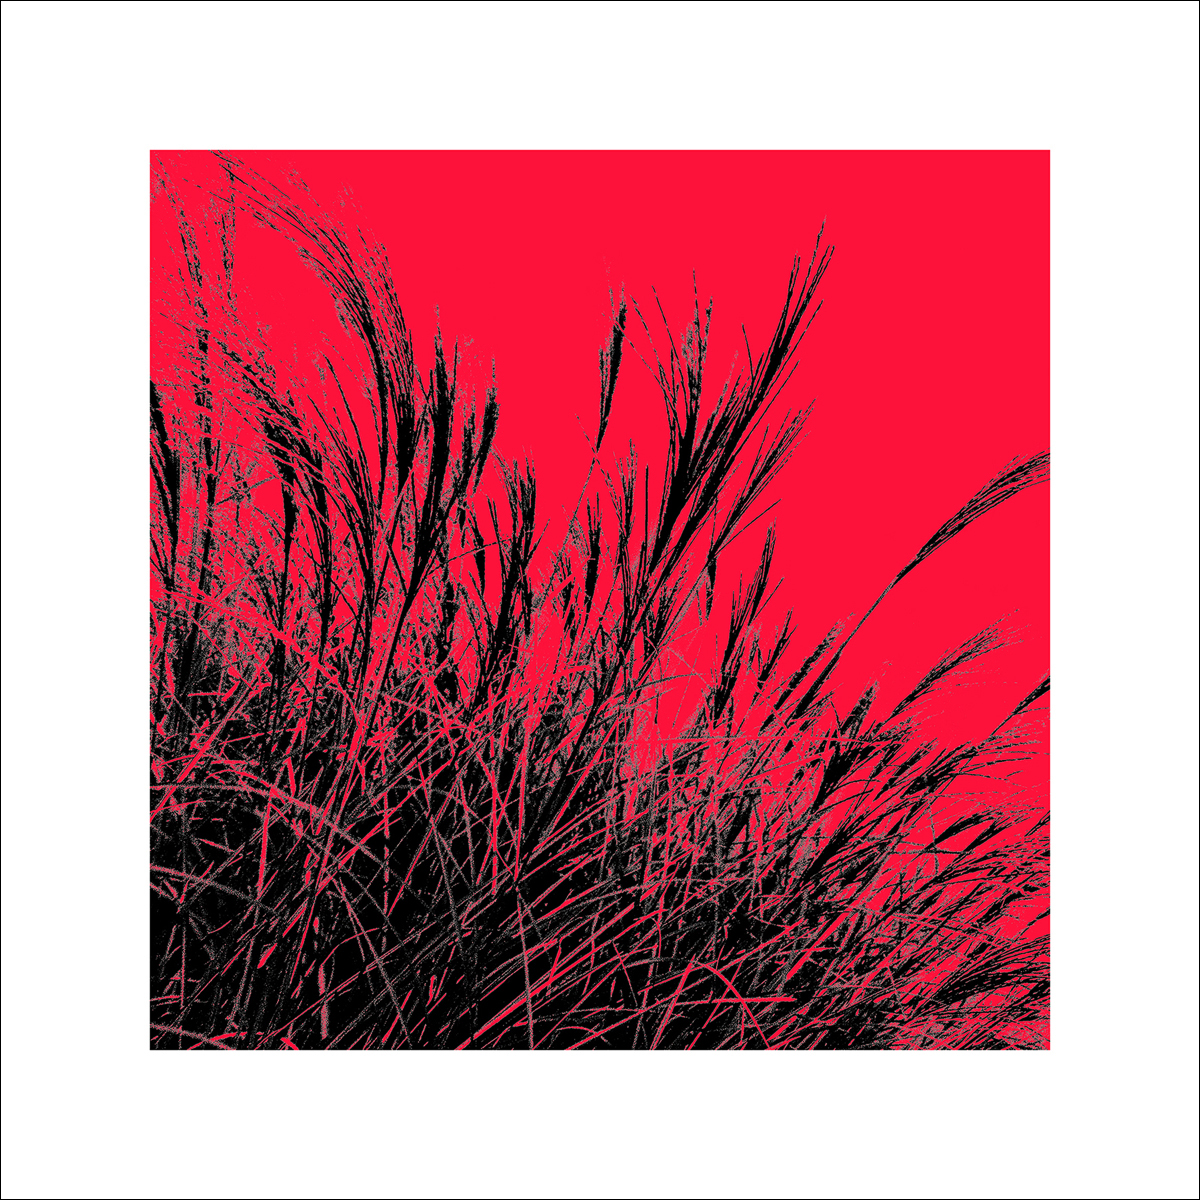 Polla, D.: Grass (red), 2011 ZG